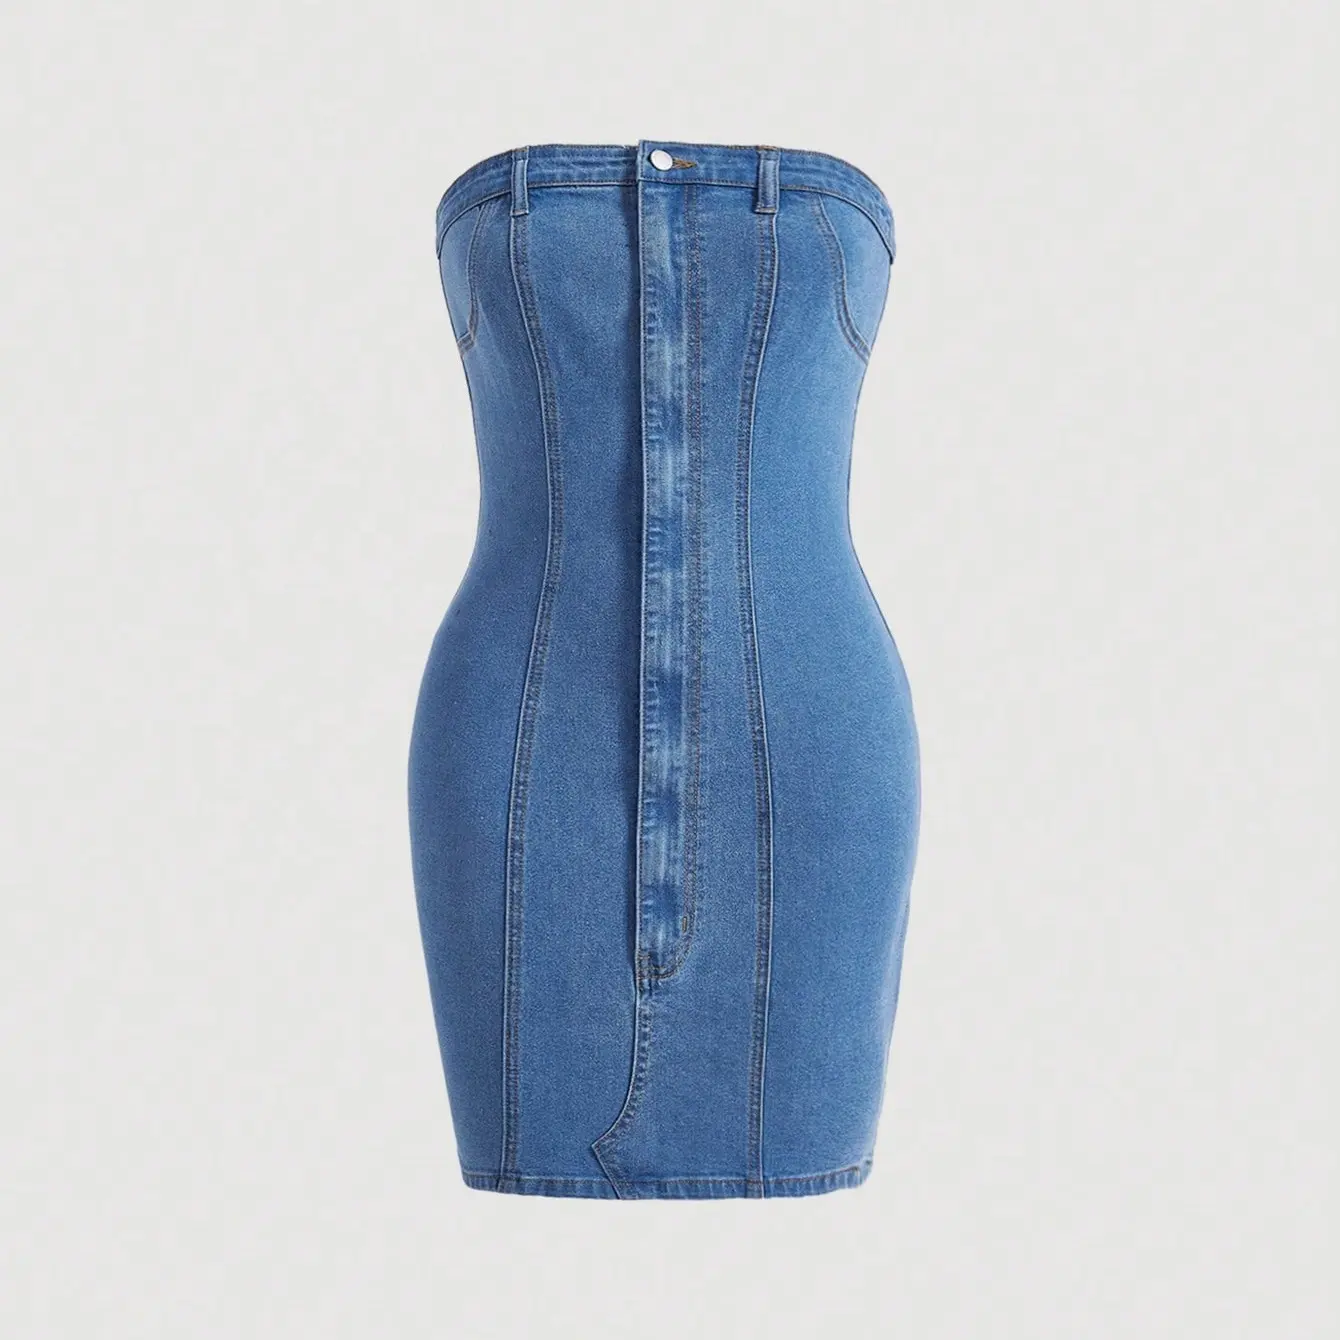 WD020 benutzer definierte Jeans Tube Kleid Frauen Denim Gesamt kleid Frauen ärmellose Jeans kleider